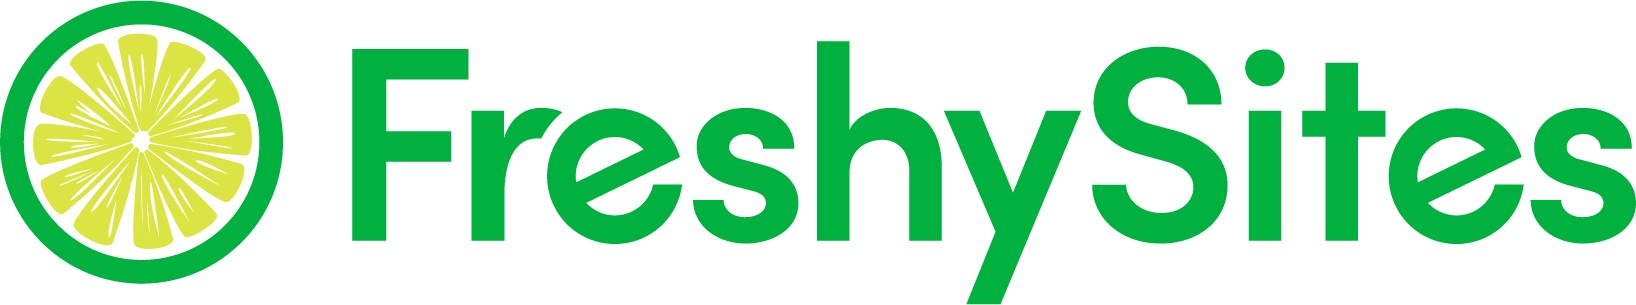 FreshySites - Website Design's Logo